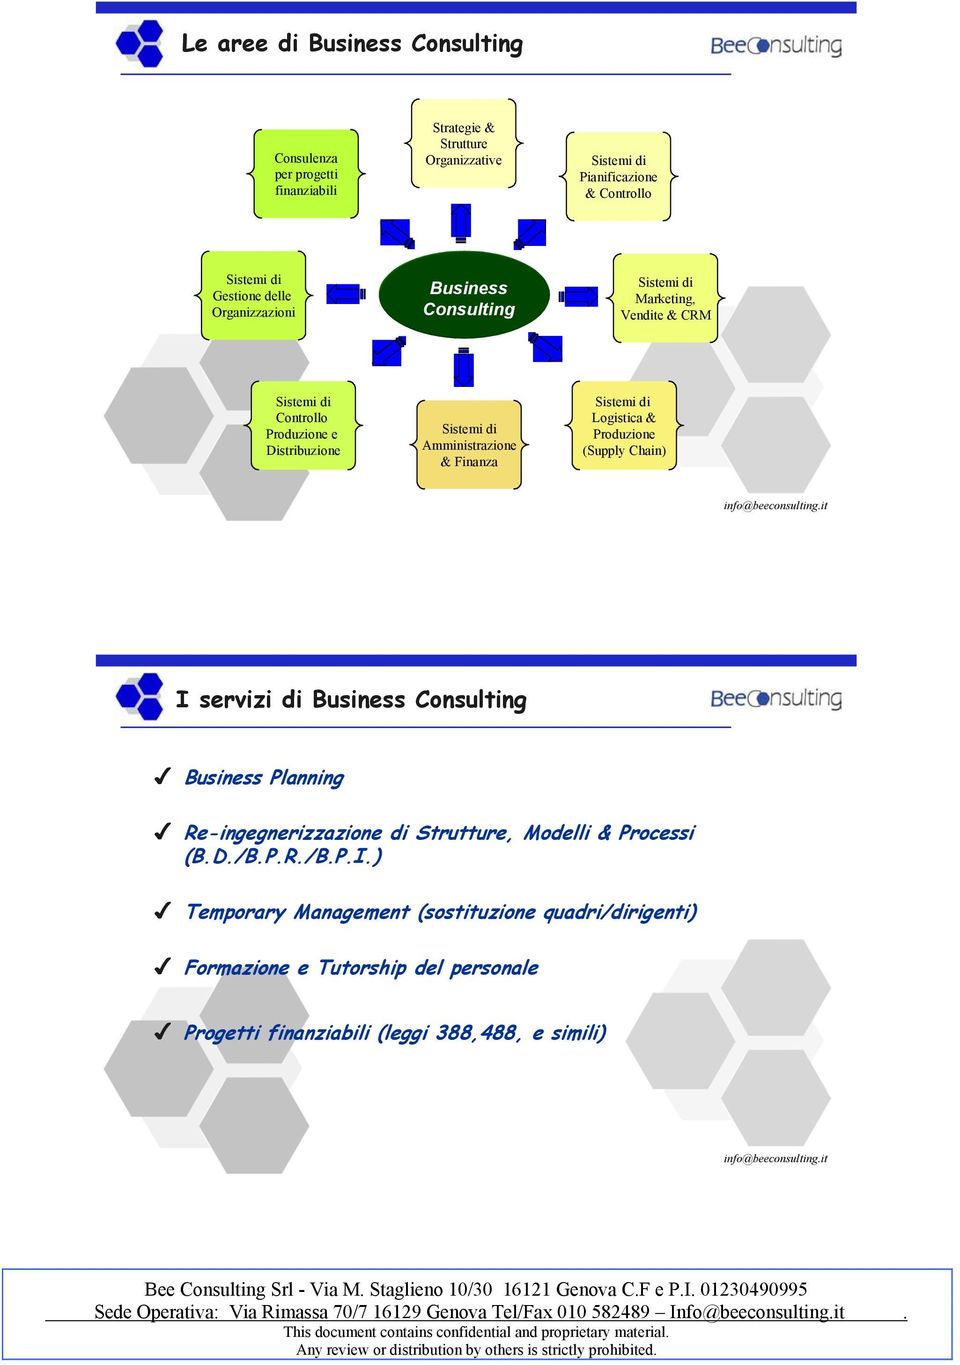 Consulting Marketing, Vendite & CRM Controllo Produzione e Distribuzione Amministrazione & Finanza Logistica & Produzione (Supply